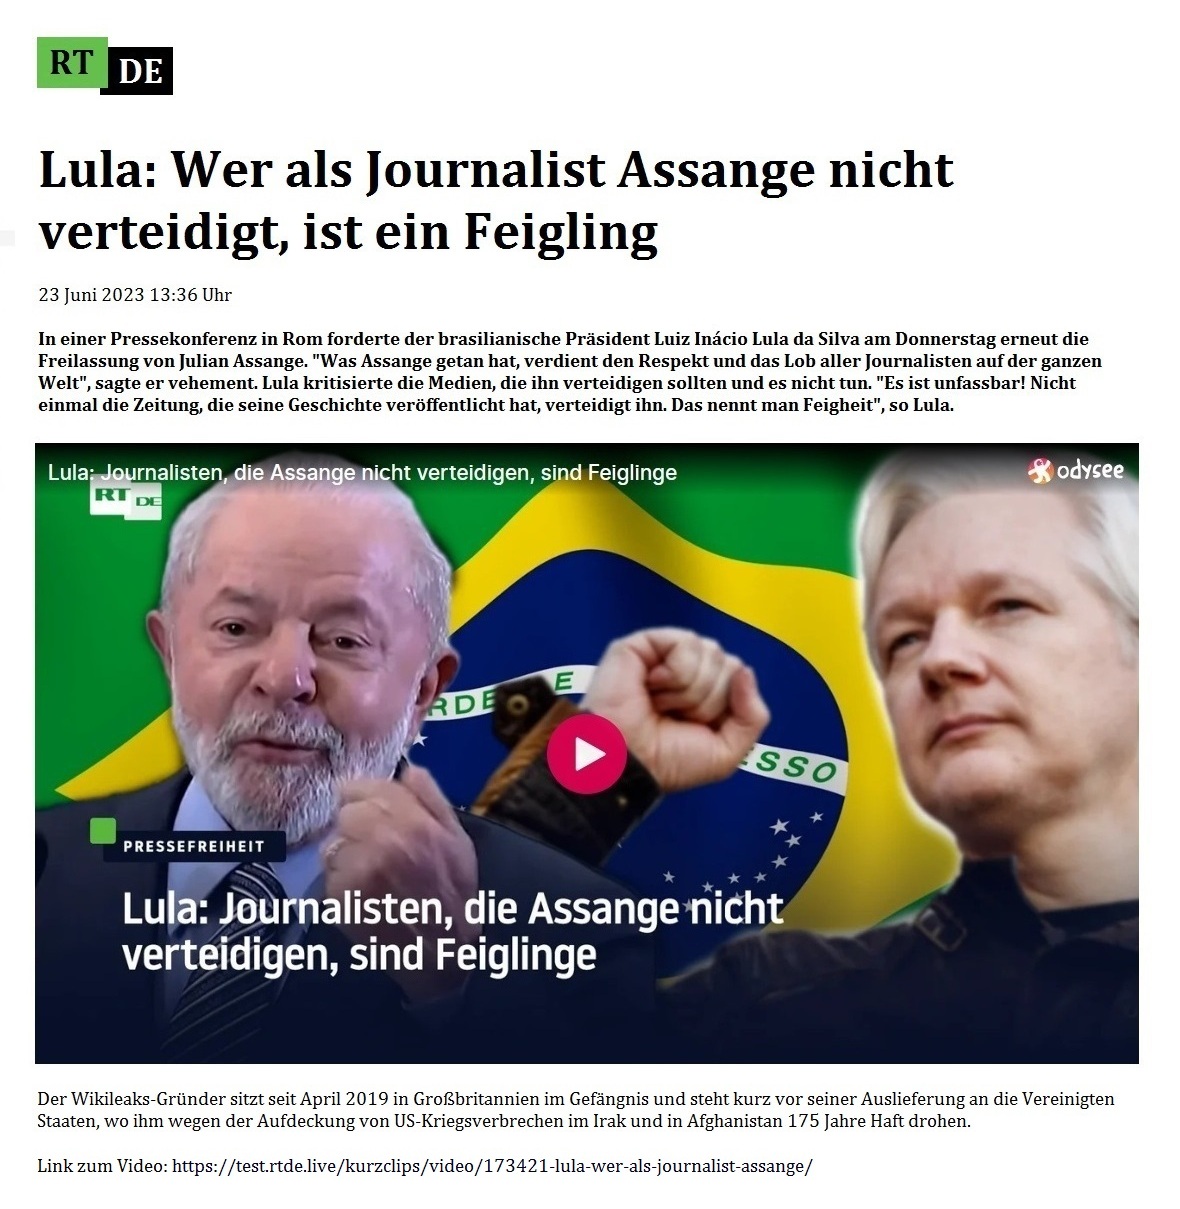 Lula: Wer als Journalist Assange nicht verteidigt, ist ein Feigling - 23 Juni 2023 13:36 Uhr - In einer Pressekonferenz in Rom forderte der brasilianische Präsident Luiz Inácio Lula da Silva am Donnerstag erneut die Freilassung von Julian Assange. 'Was Assange getan hat, verdient den Respekt und das Lob aller Journalisten auf der ganzen Welt', sagte er vehement. Lula kritisierte die Medien, die ihn verteidigen sollten und es nicht tun. 'Es ist unfassbar! Nicht einmal die Zeitung, die seine Geschichte veröffentlicht hat, verteidigt ihn. Das nennt man Feigheit', so Lula. - 23 Juni 2023 13:36 Uhr - RT DE - Link zum Video: https://test.rtde.live/kurzclips/video/173421-lula-wer-als-journalist-assange/